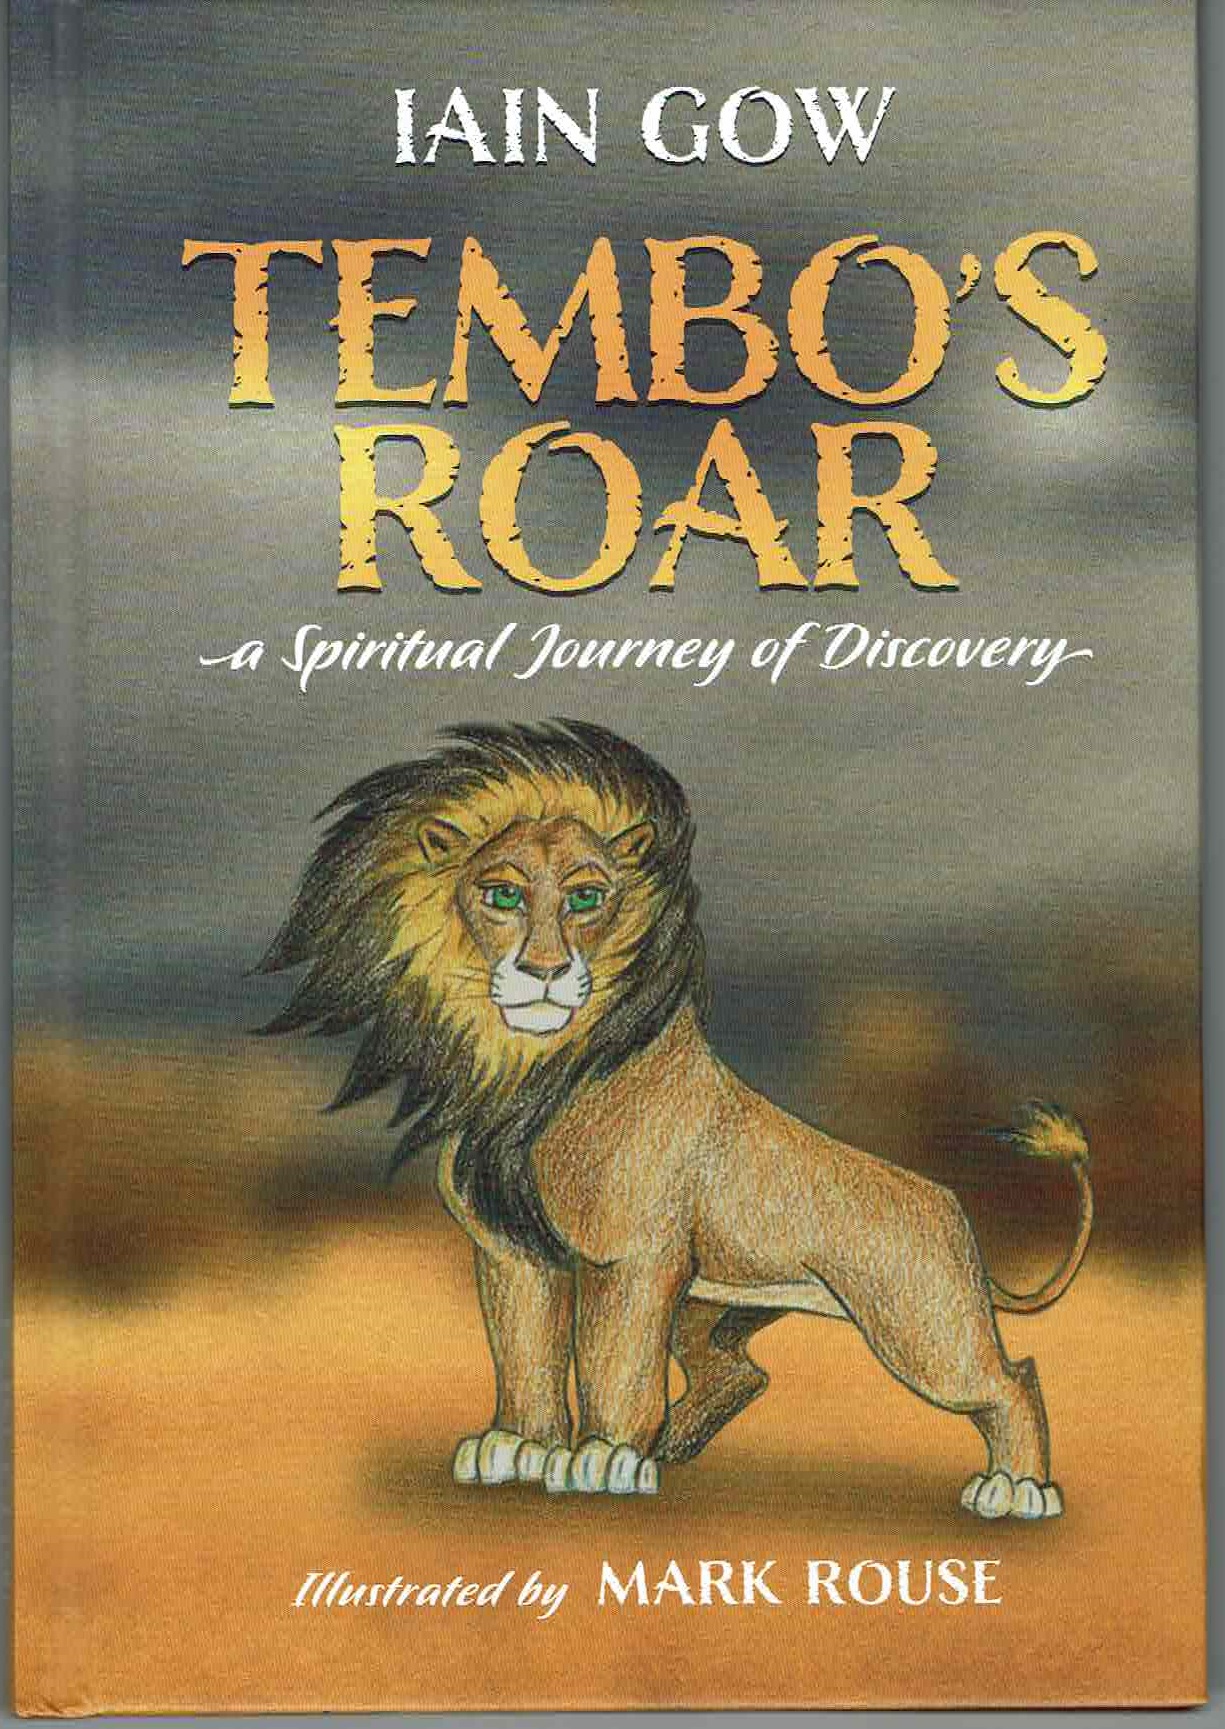 Reflection on “Tembo’s Roar”